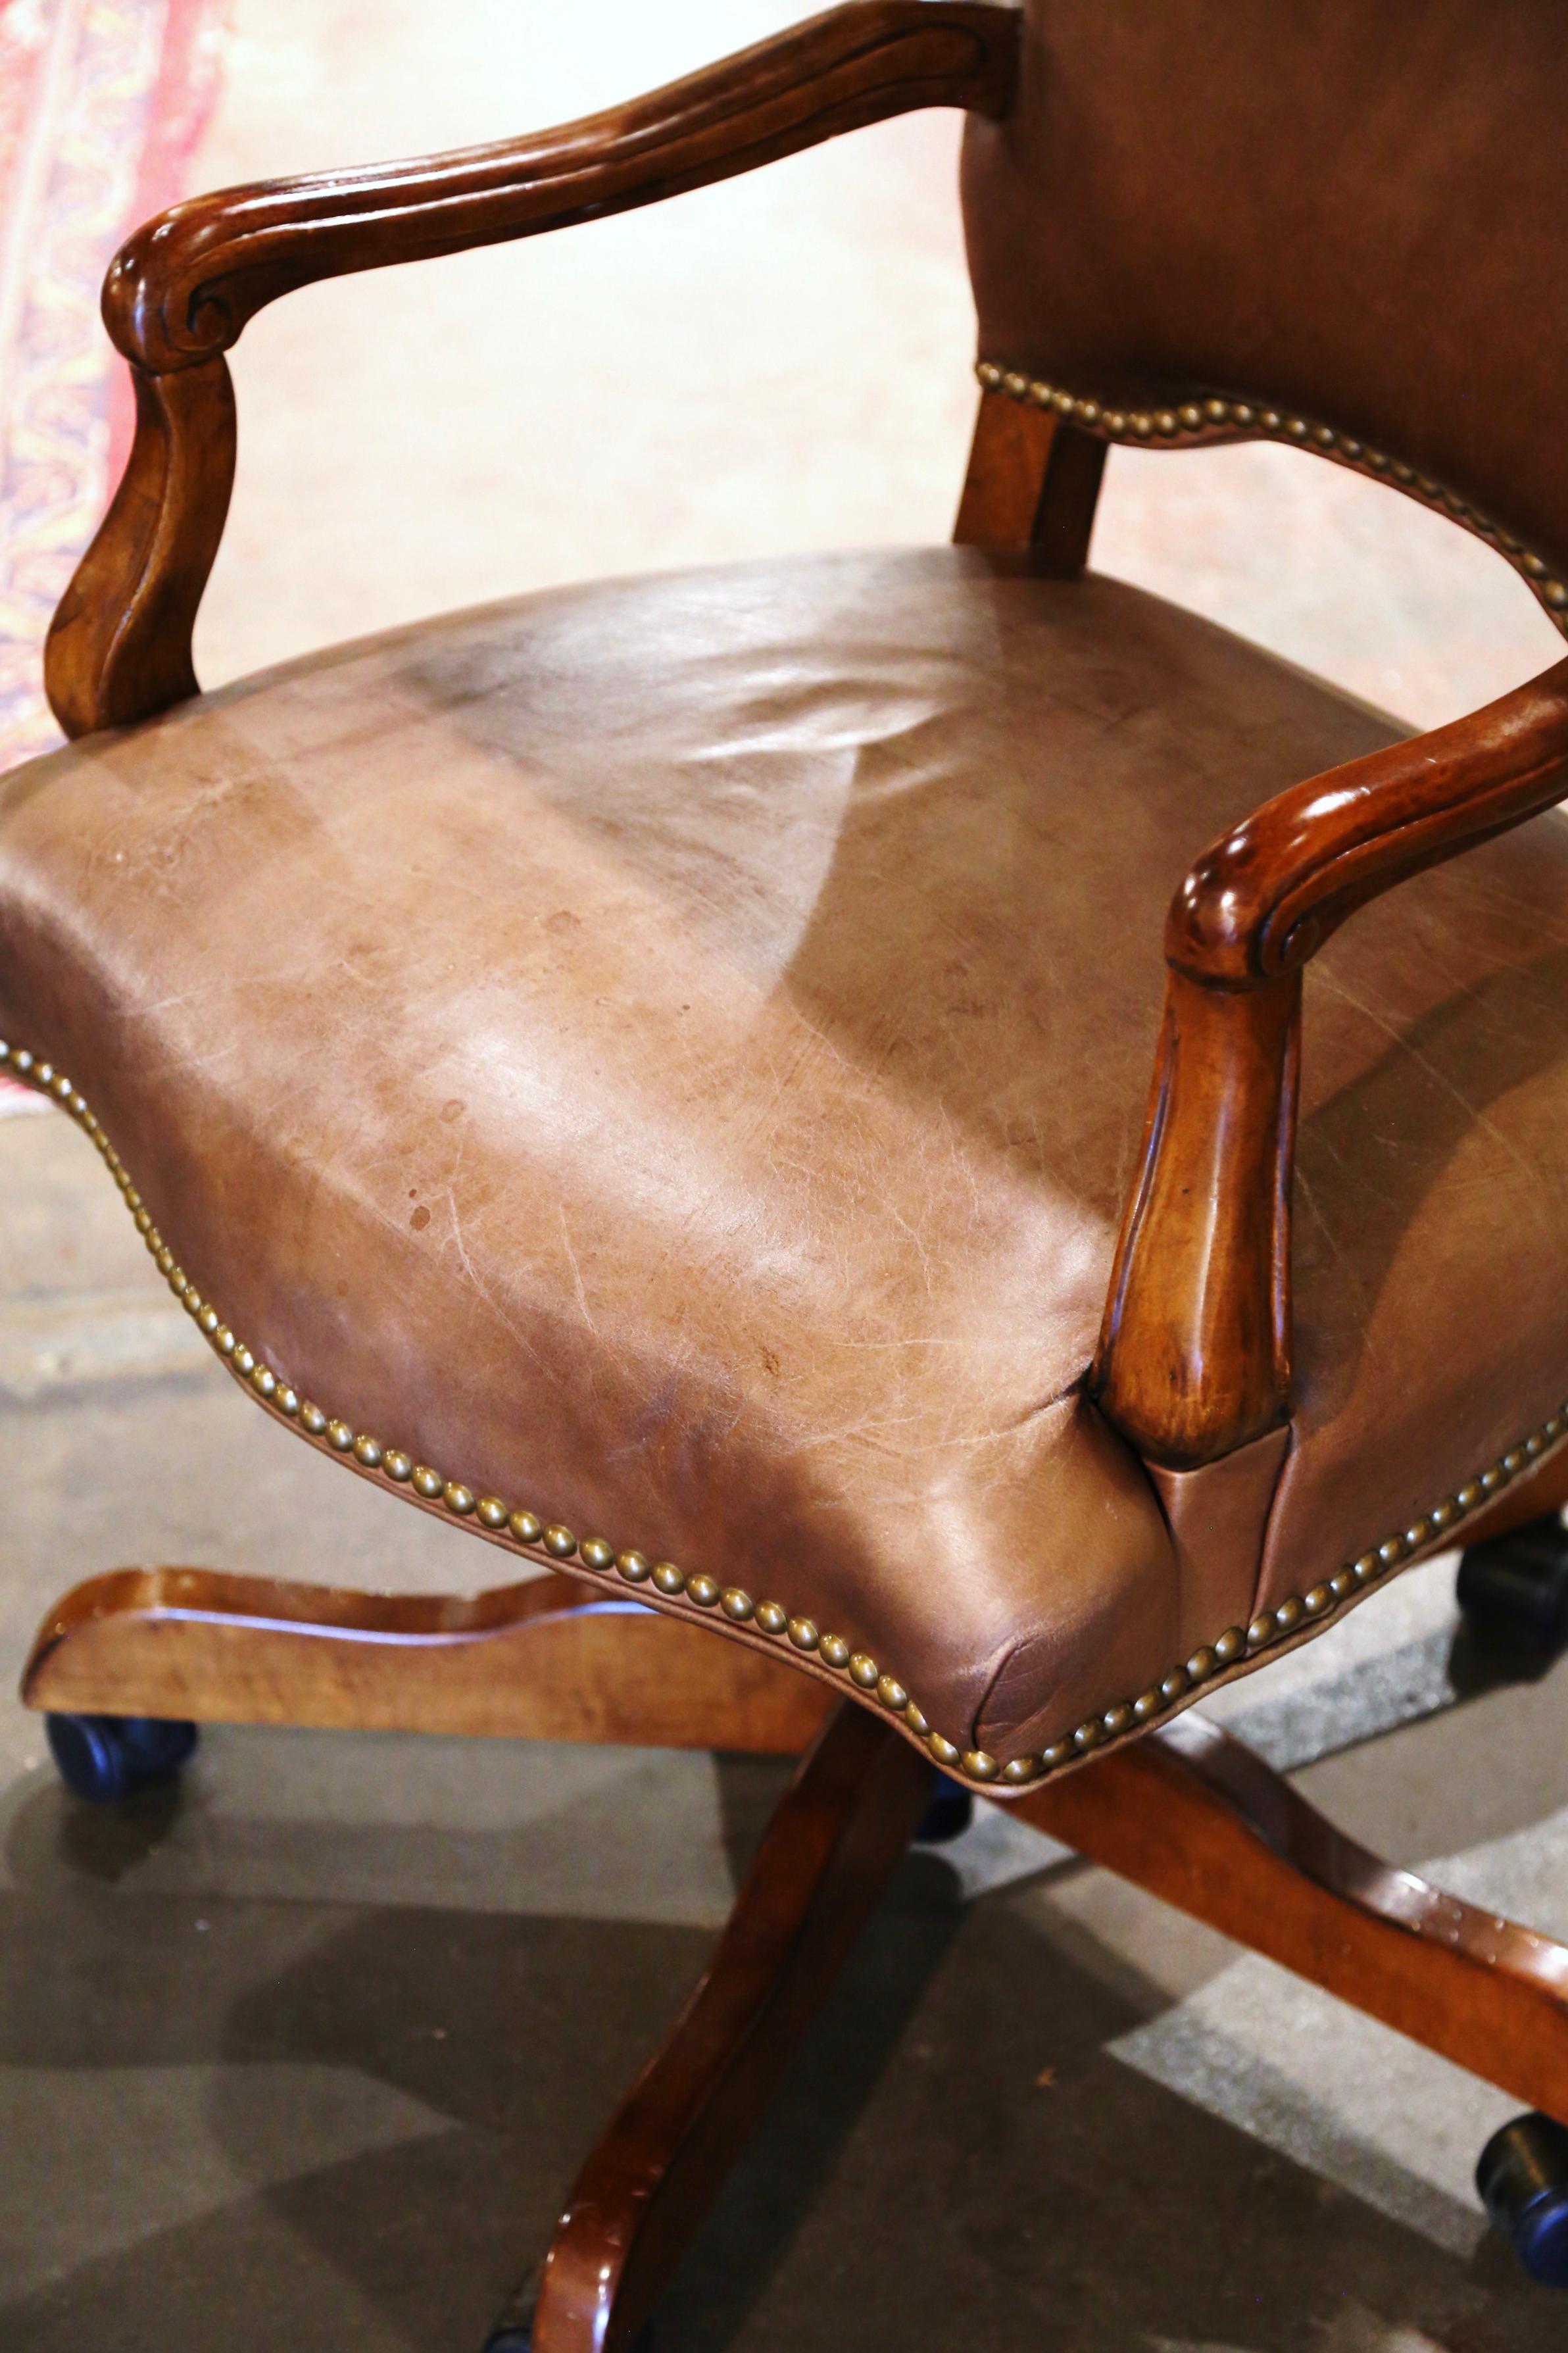 Habillez le bureau ou l'étude d'un homme avec cet élégant fauteuil vintage. Fabriquée à la main vers 1970 dans un style masculin, la chaise repose sur une base pivotante avec des pieds en bois se terminant par des roulettes en métal. Cette chaise